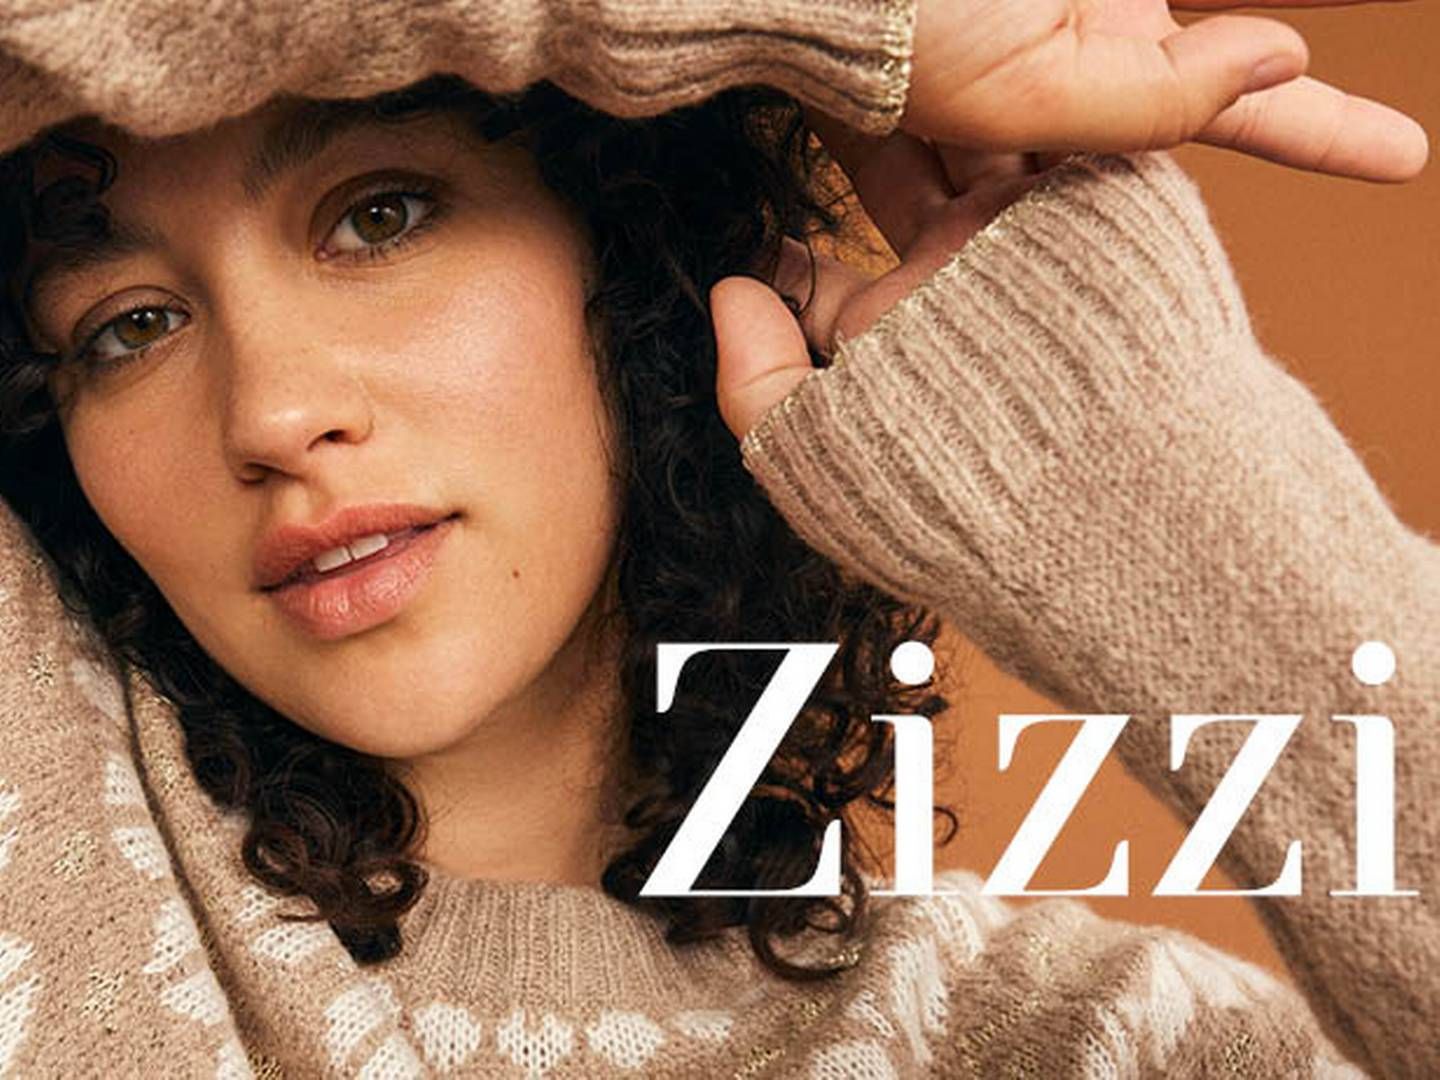 Brandet Zizzi, der laver mode til plus size-kvinder, blev grundlagt i 2000. | Foto: Zizzi/pr